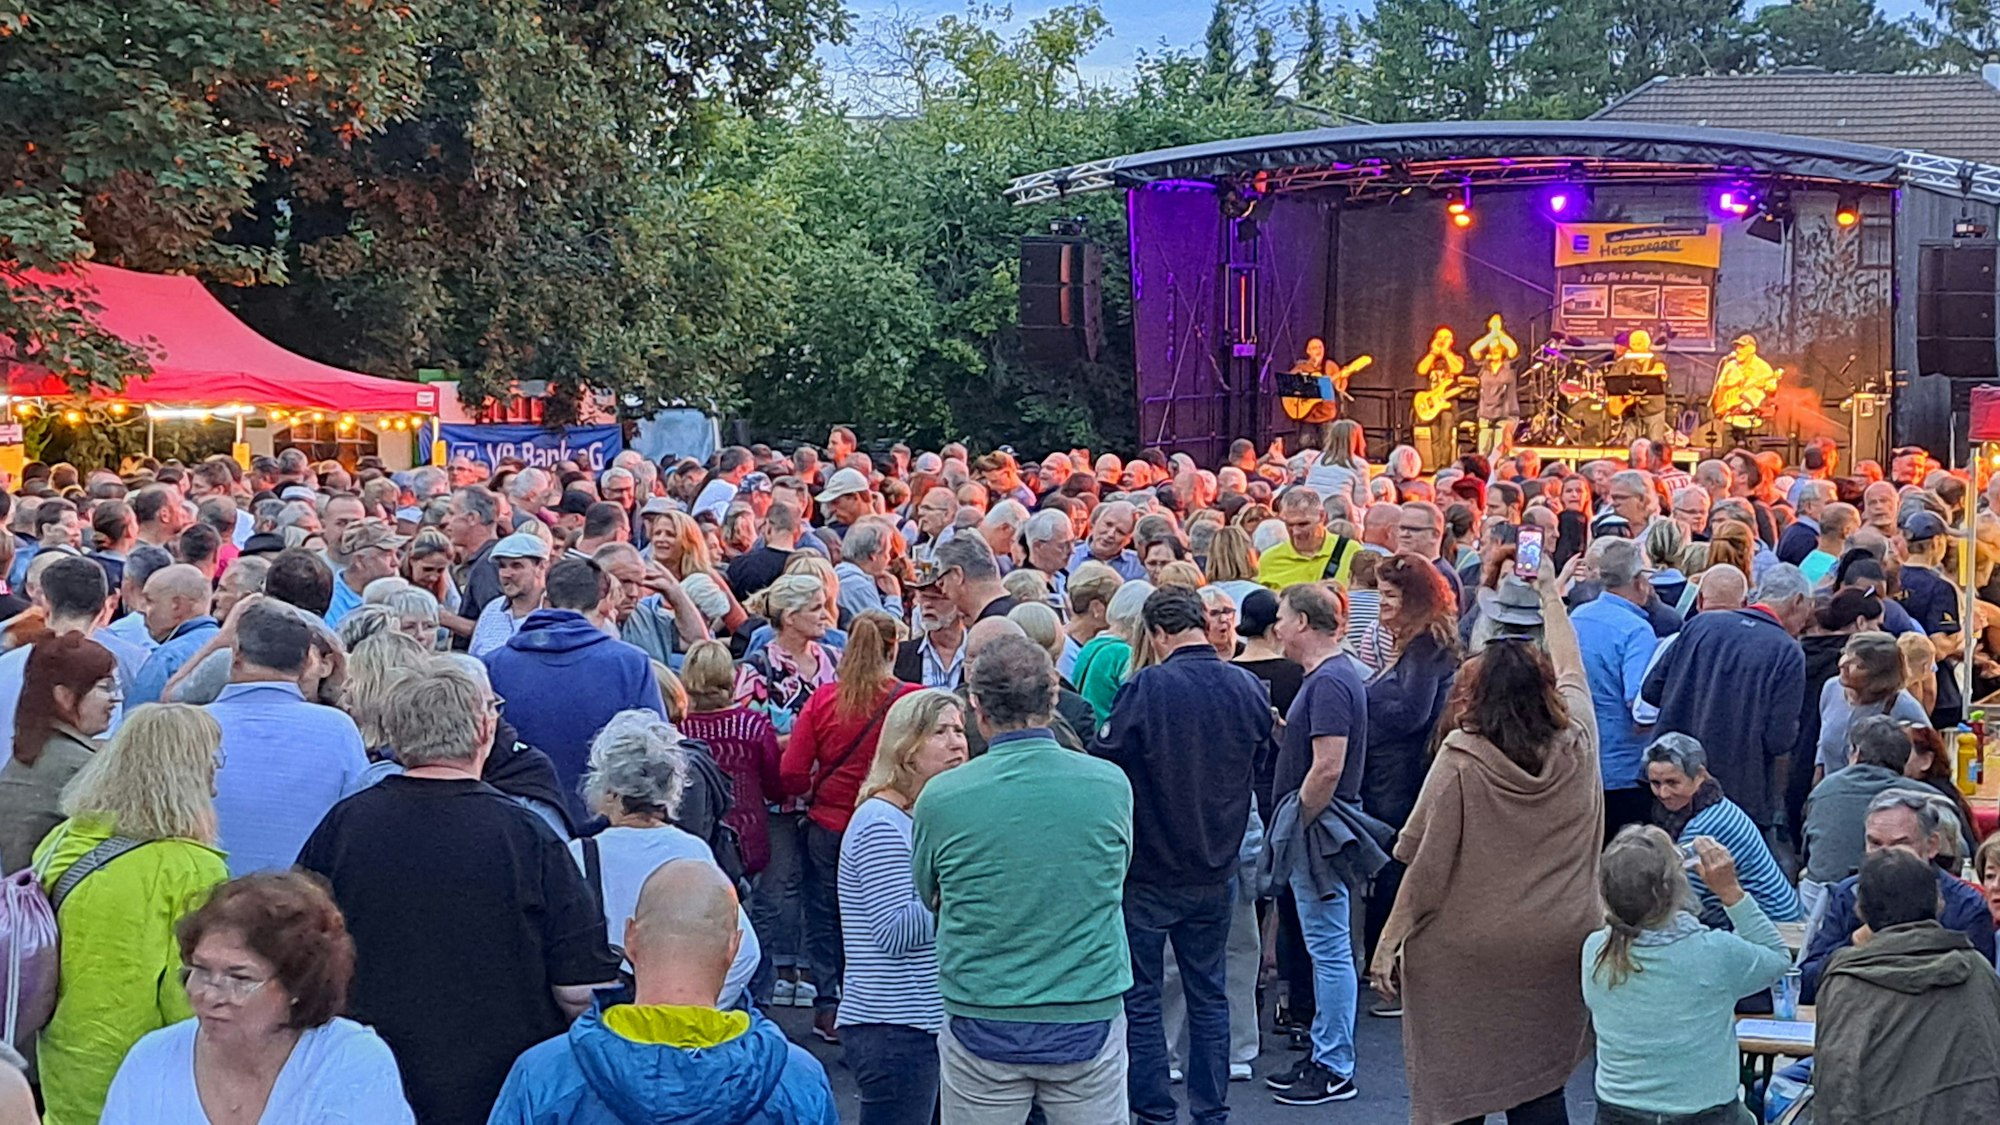 Der Dorfplatz in Bergisch Gladbach-Sand ist voll von Menschen, im Hintergrund steht eine Bühne von der die Band Clearwater spielt.